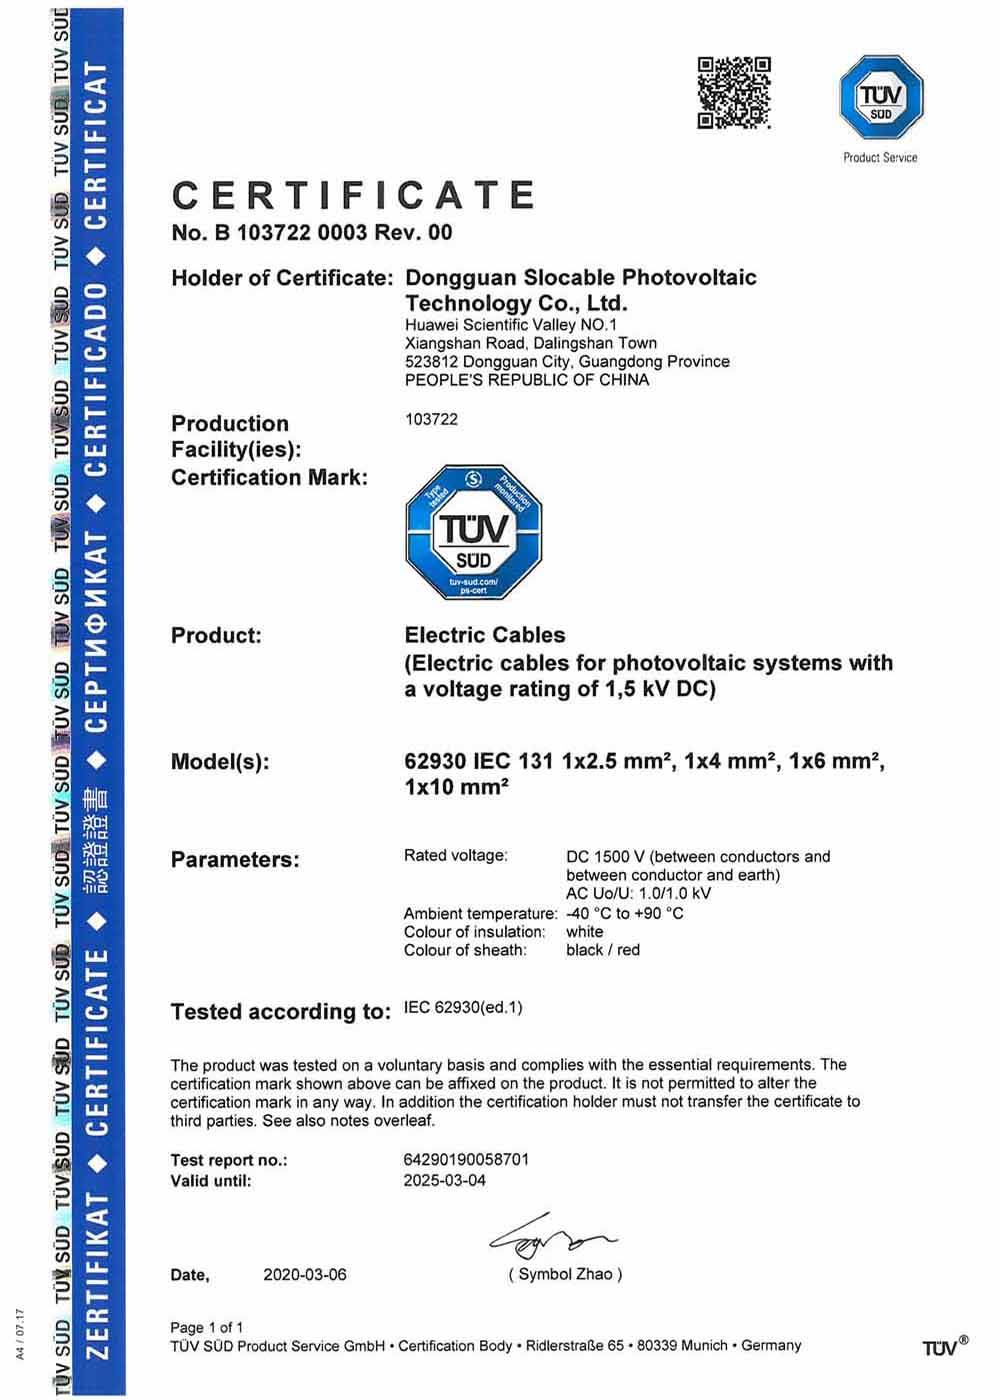 כבל סולארי 1500V TUV IEC62930